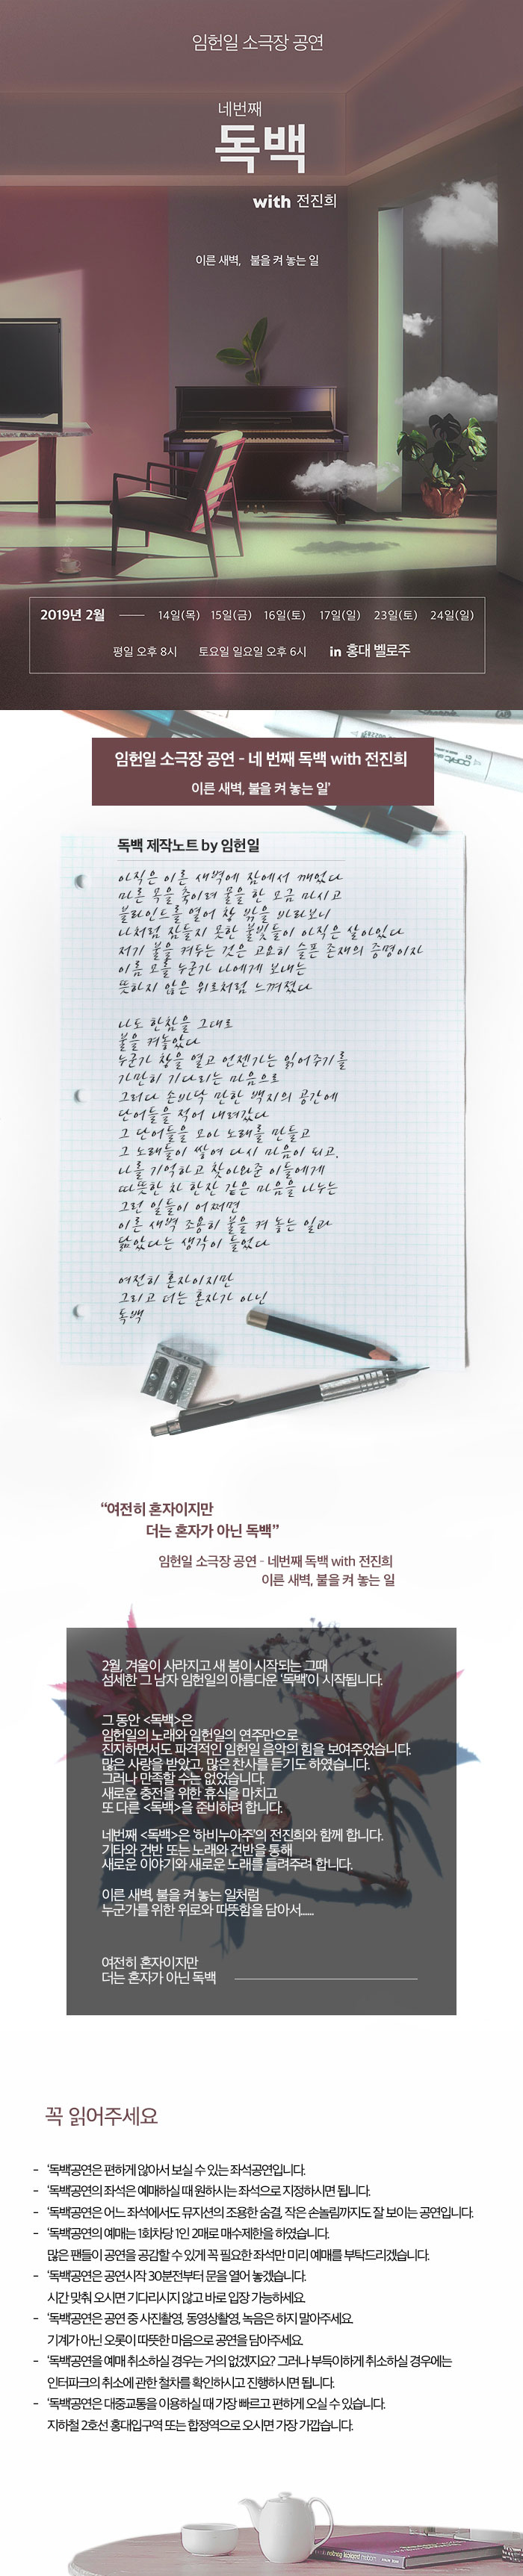 임헌일 소극장 공연 정보 / 네 번째 독백 (2019)